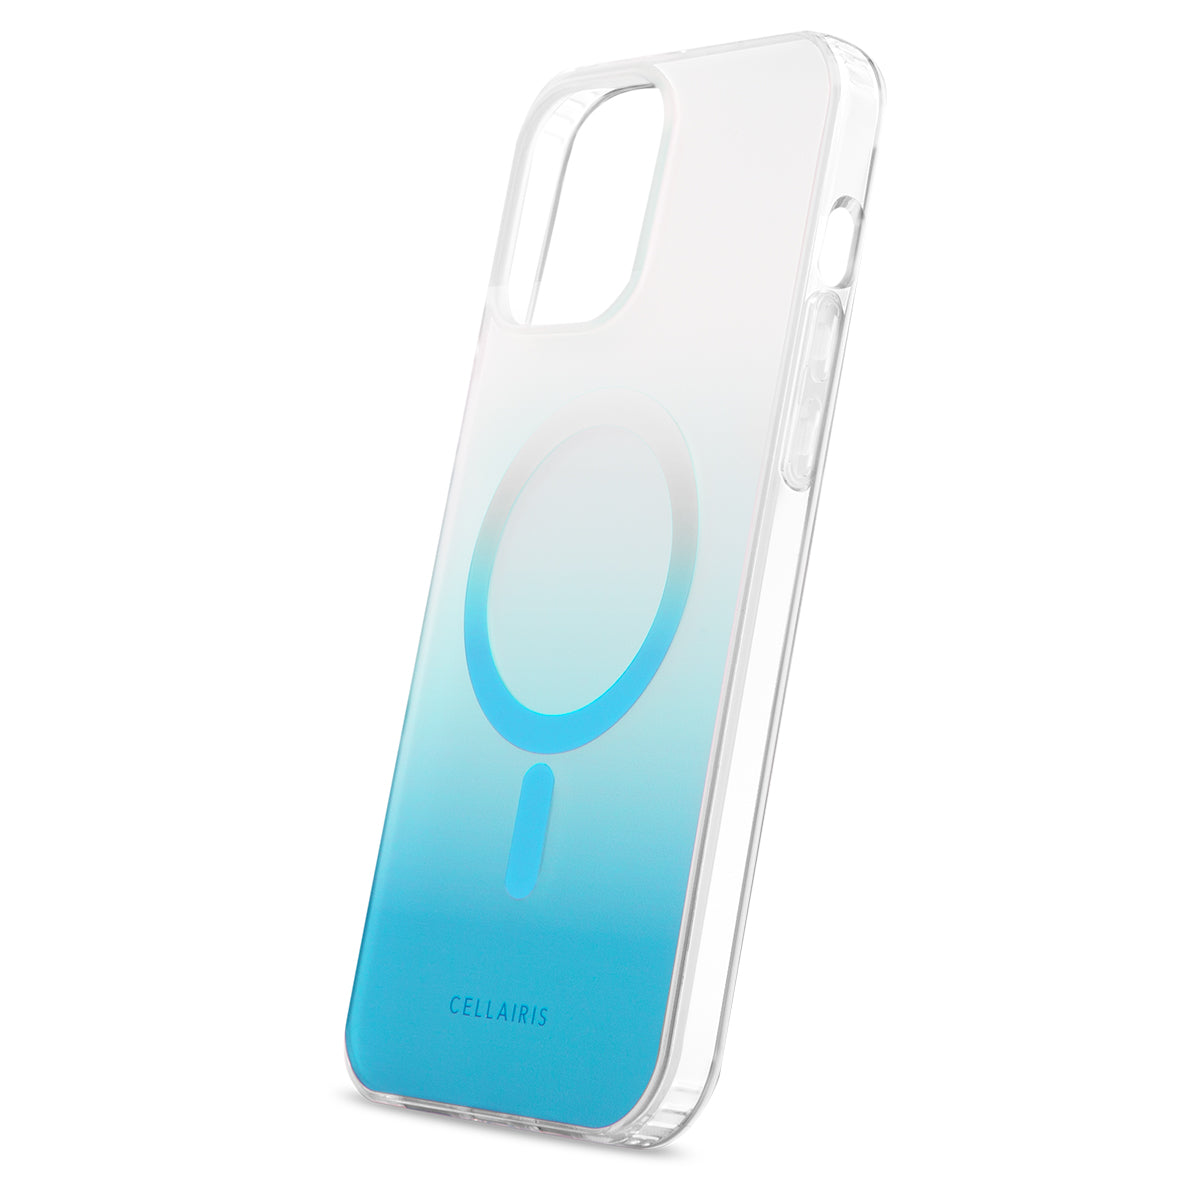 Showcase Slim Ombre - iPhone 15 Turquiose w/ MagSafe Cases